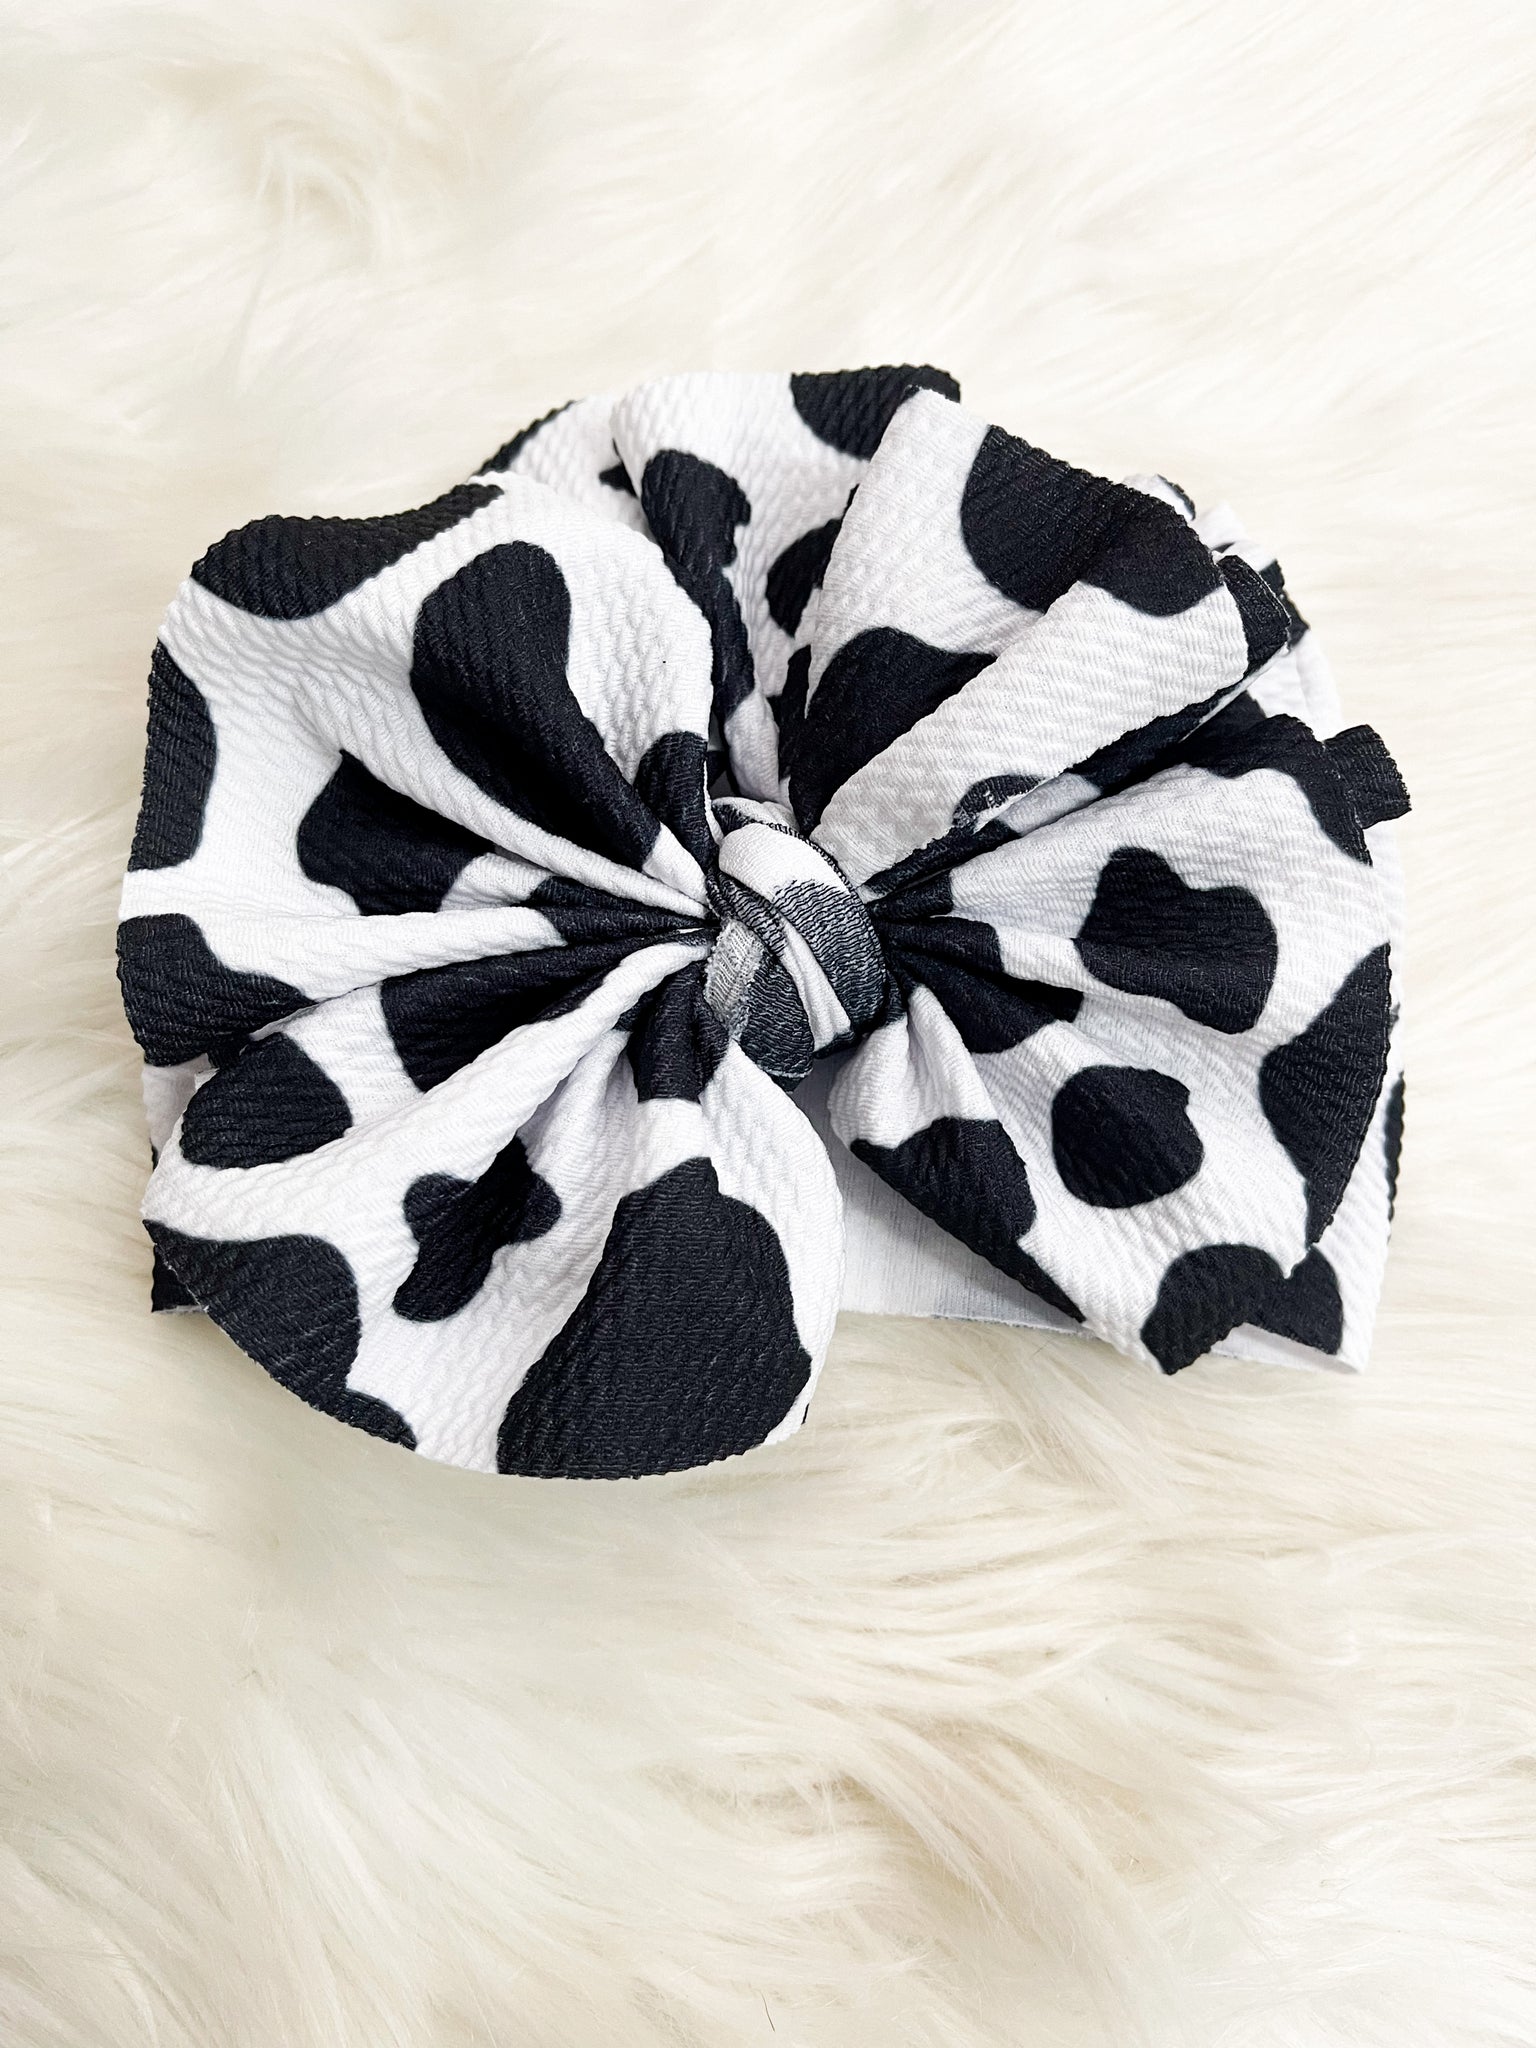 Cow print shreadded headwrap